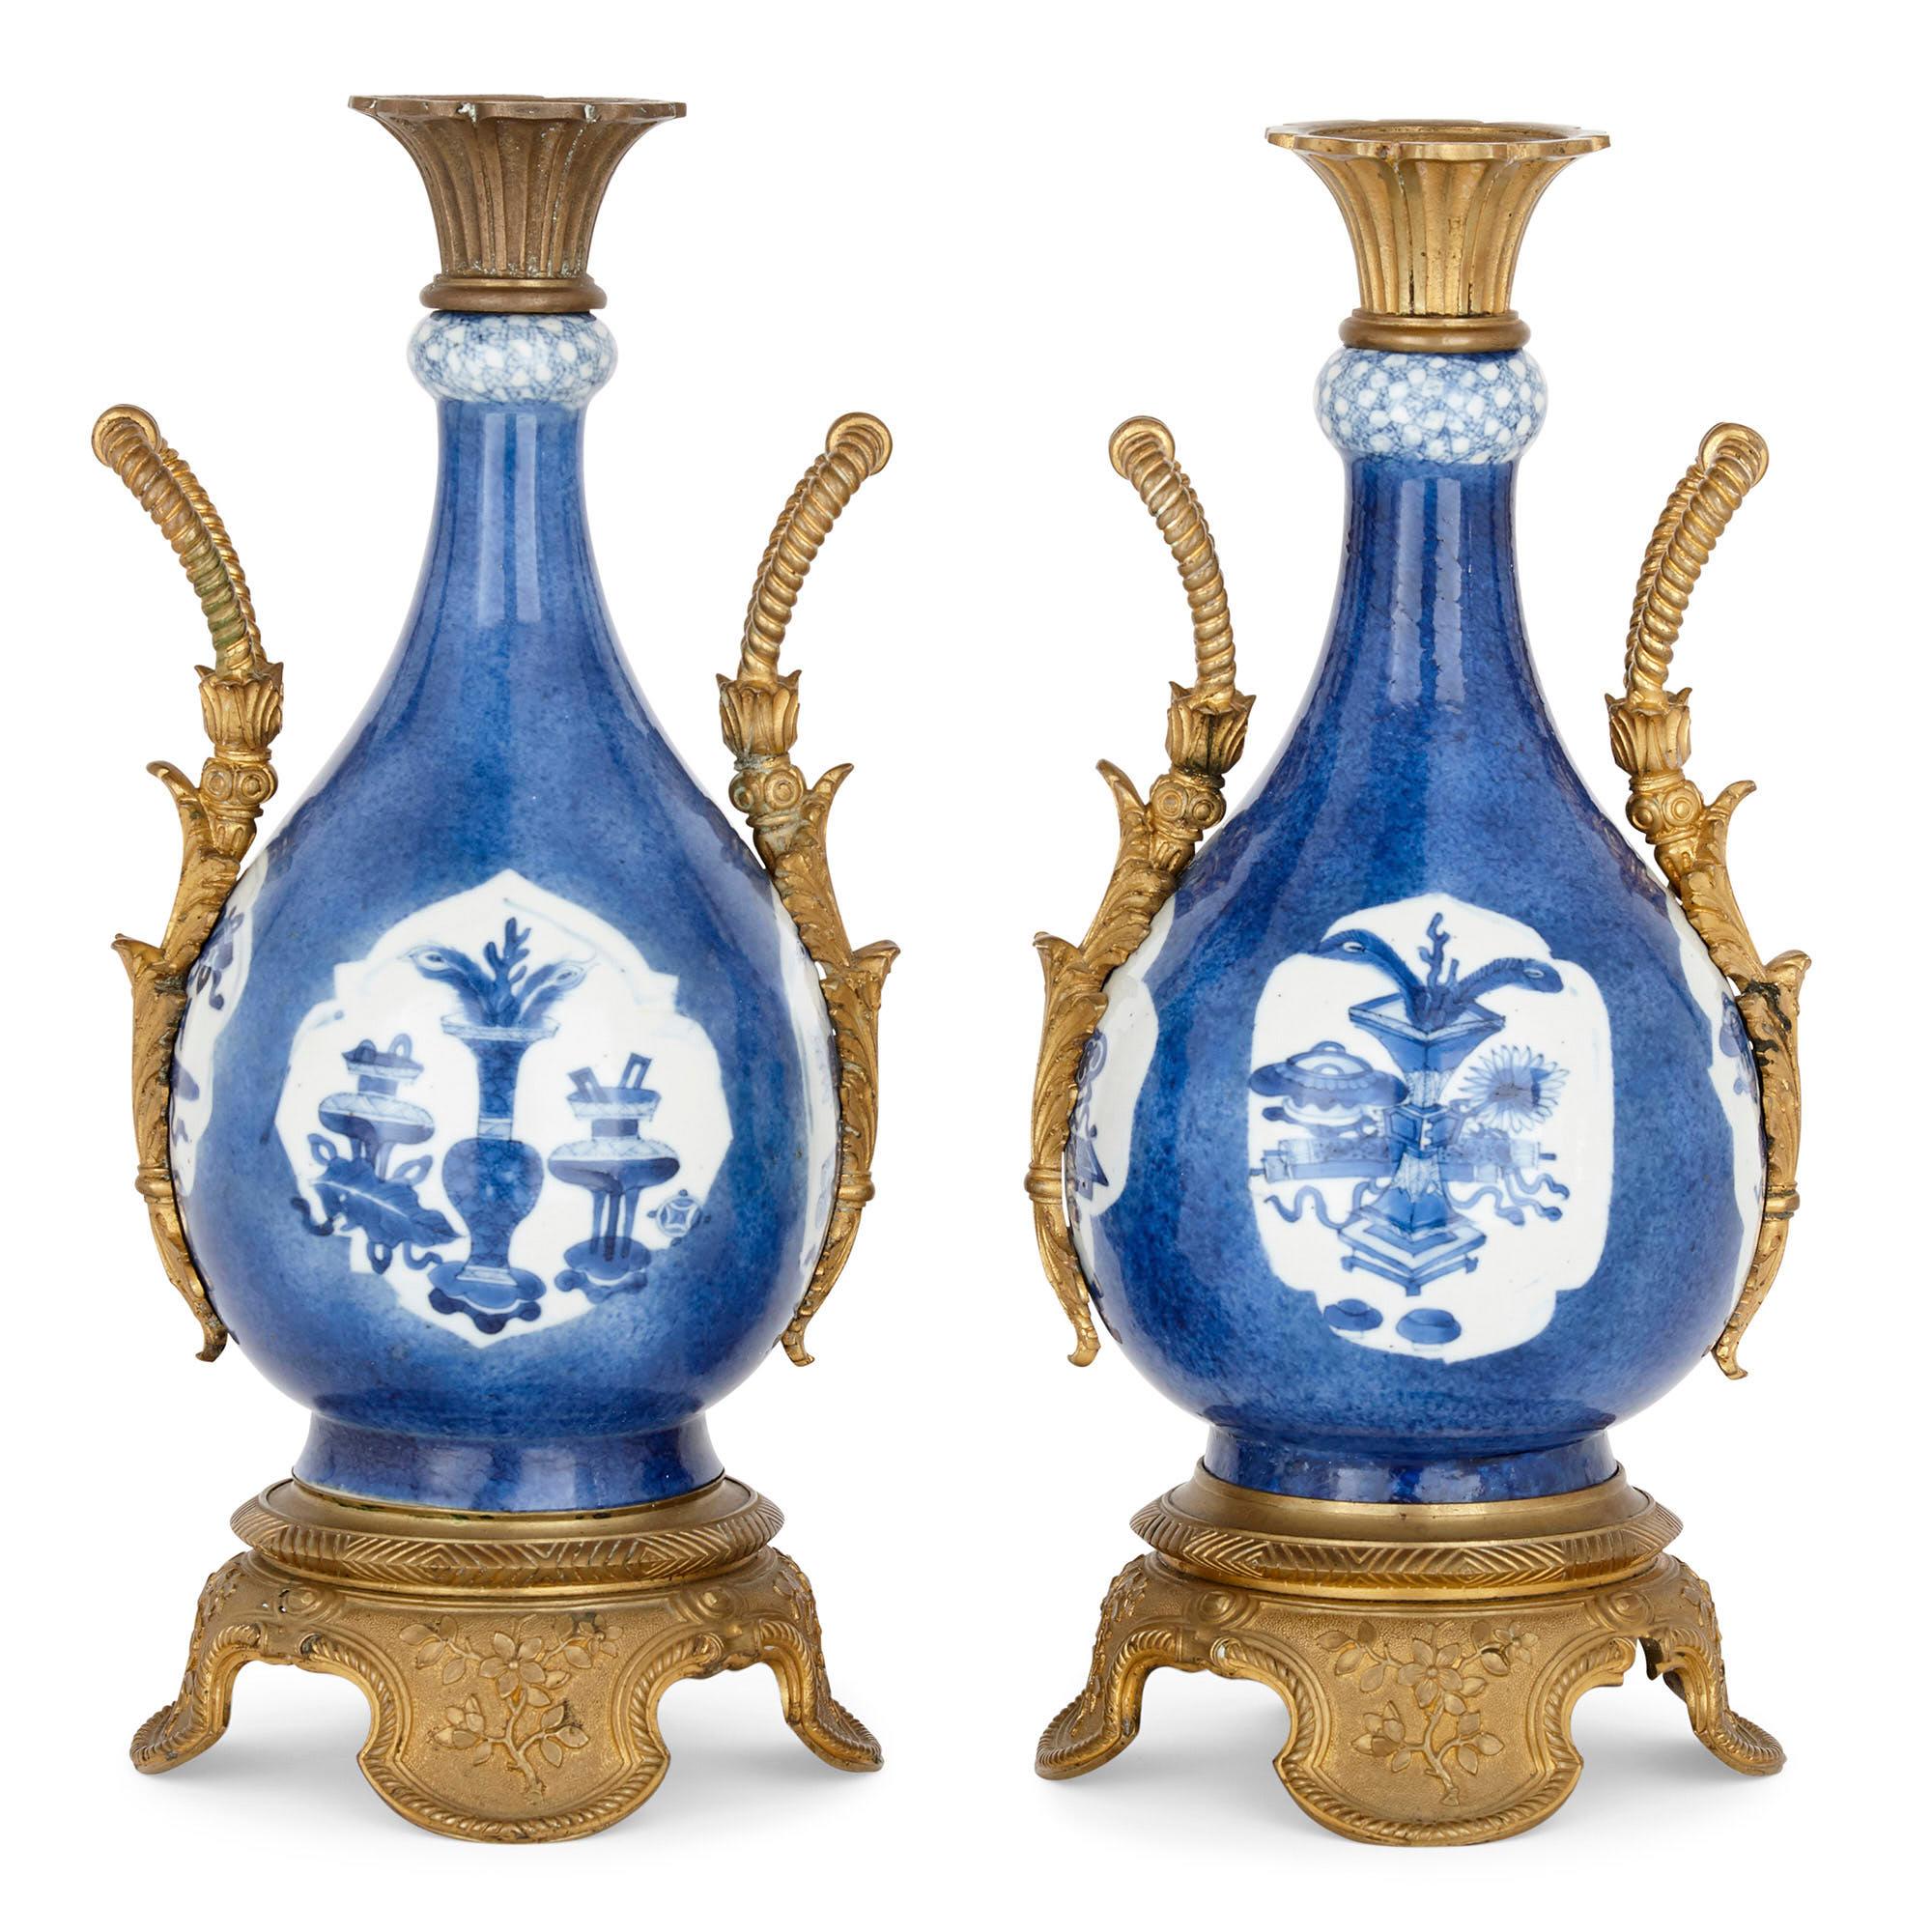 Die Vasen dieses Paares zeichnen sich durch die auffällige Kombination von Porzellan der Kangxi-Ära (um 1700) mit französischer vergoldeter Bronze aus dem 19. Diese Art der Kombination von chinesischem Porzellan mit europäischen, oft französischen